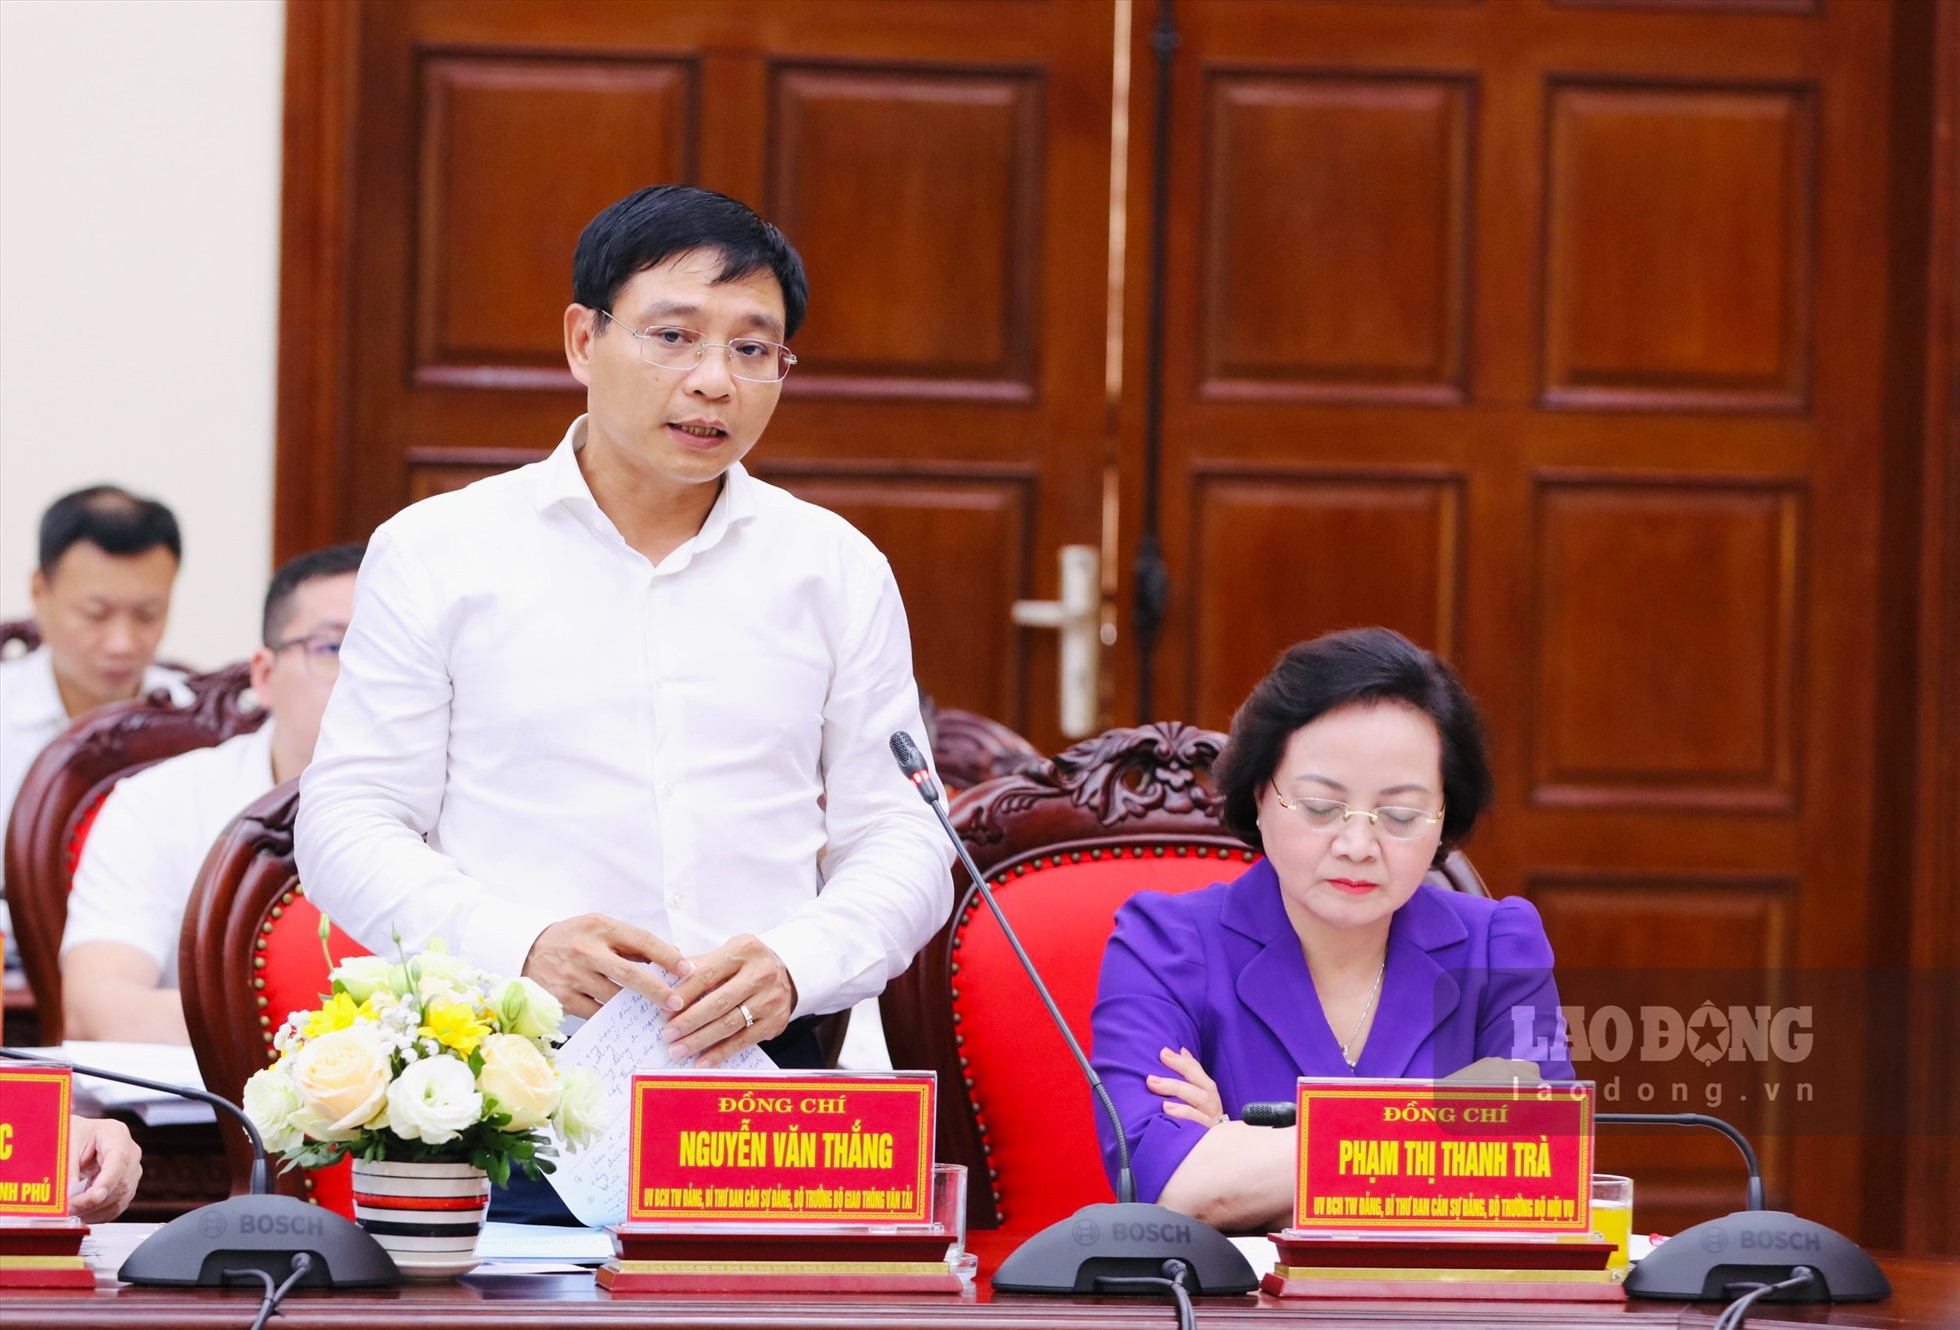 Bộ trưởng Bộ GTVT Nguyễn Văn Thắng trao đổi làm rõ một số nội dung liên quan đến những đề xuất, kiến nghị của tỉnh Ninh Bình. Ảnh: Nguyễn Trường